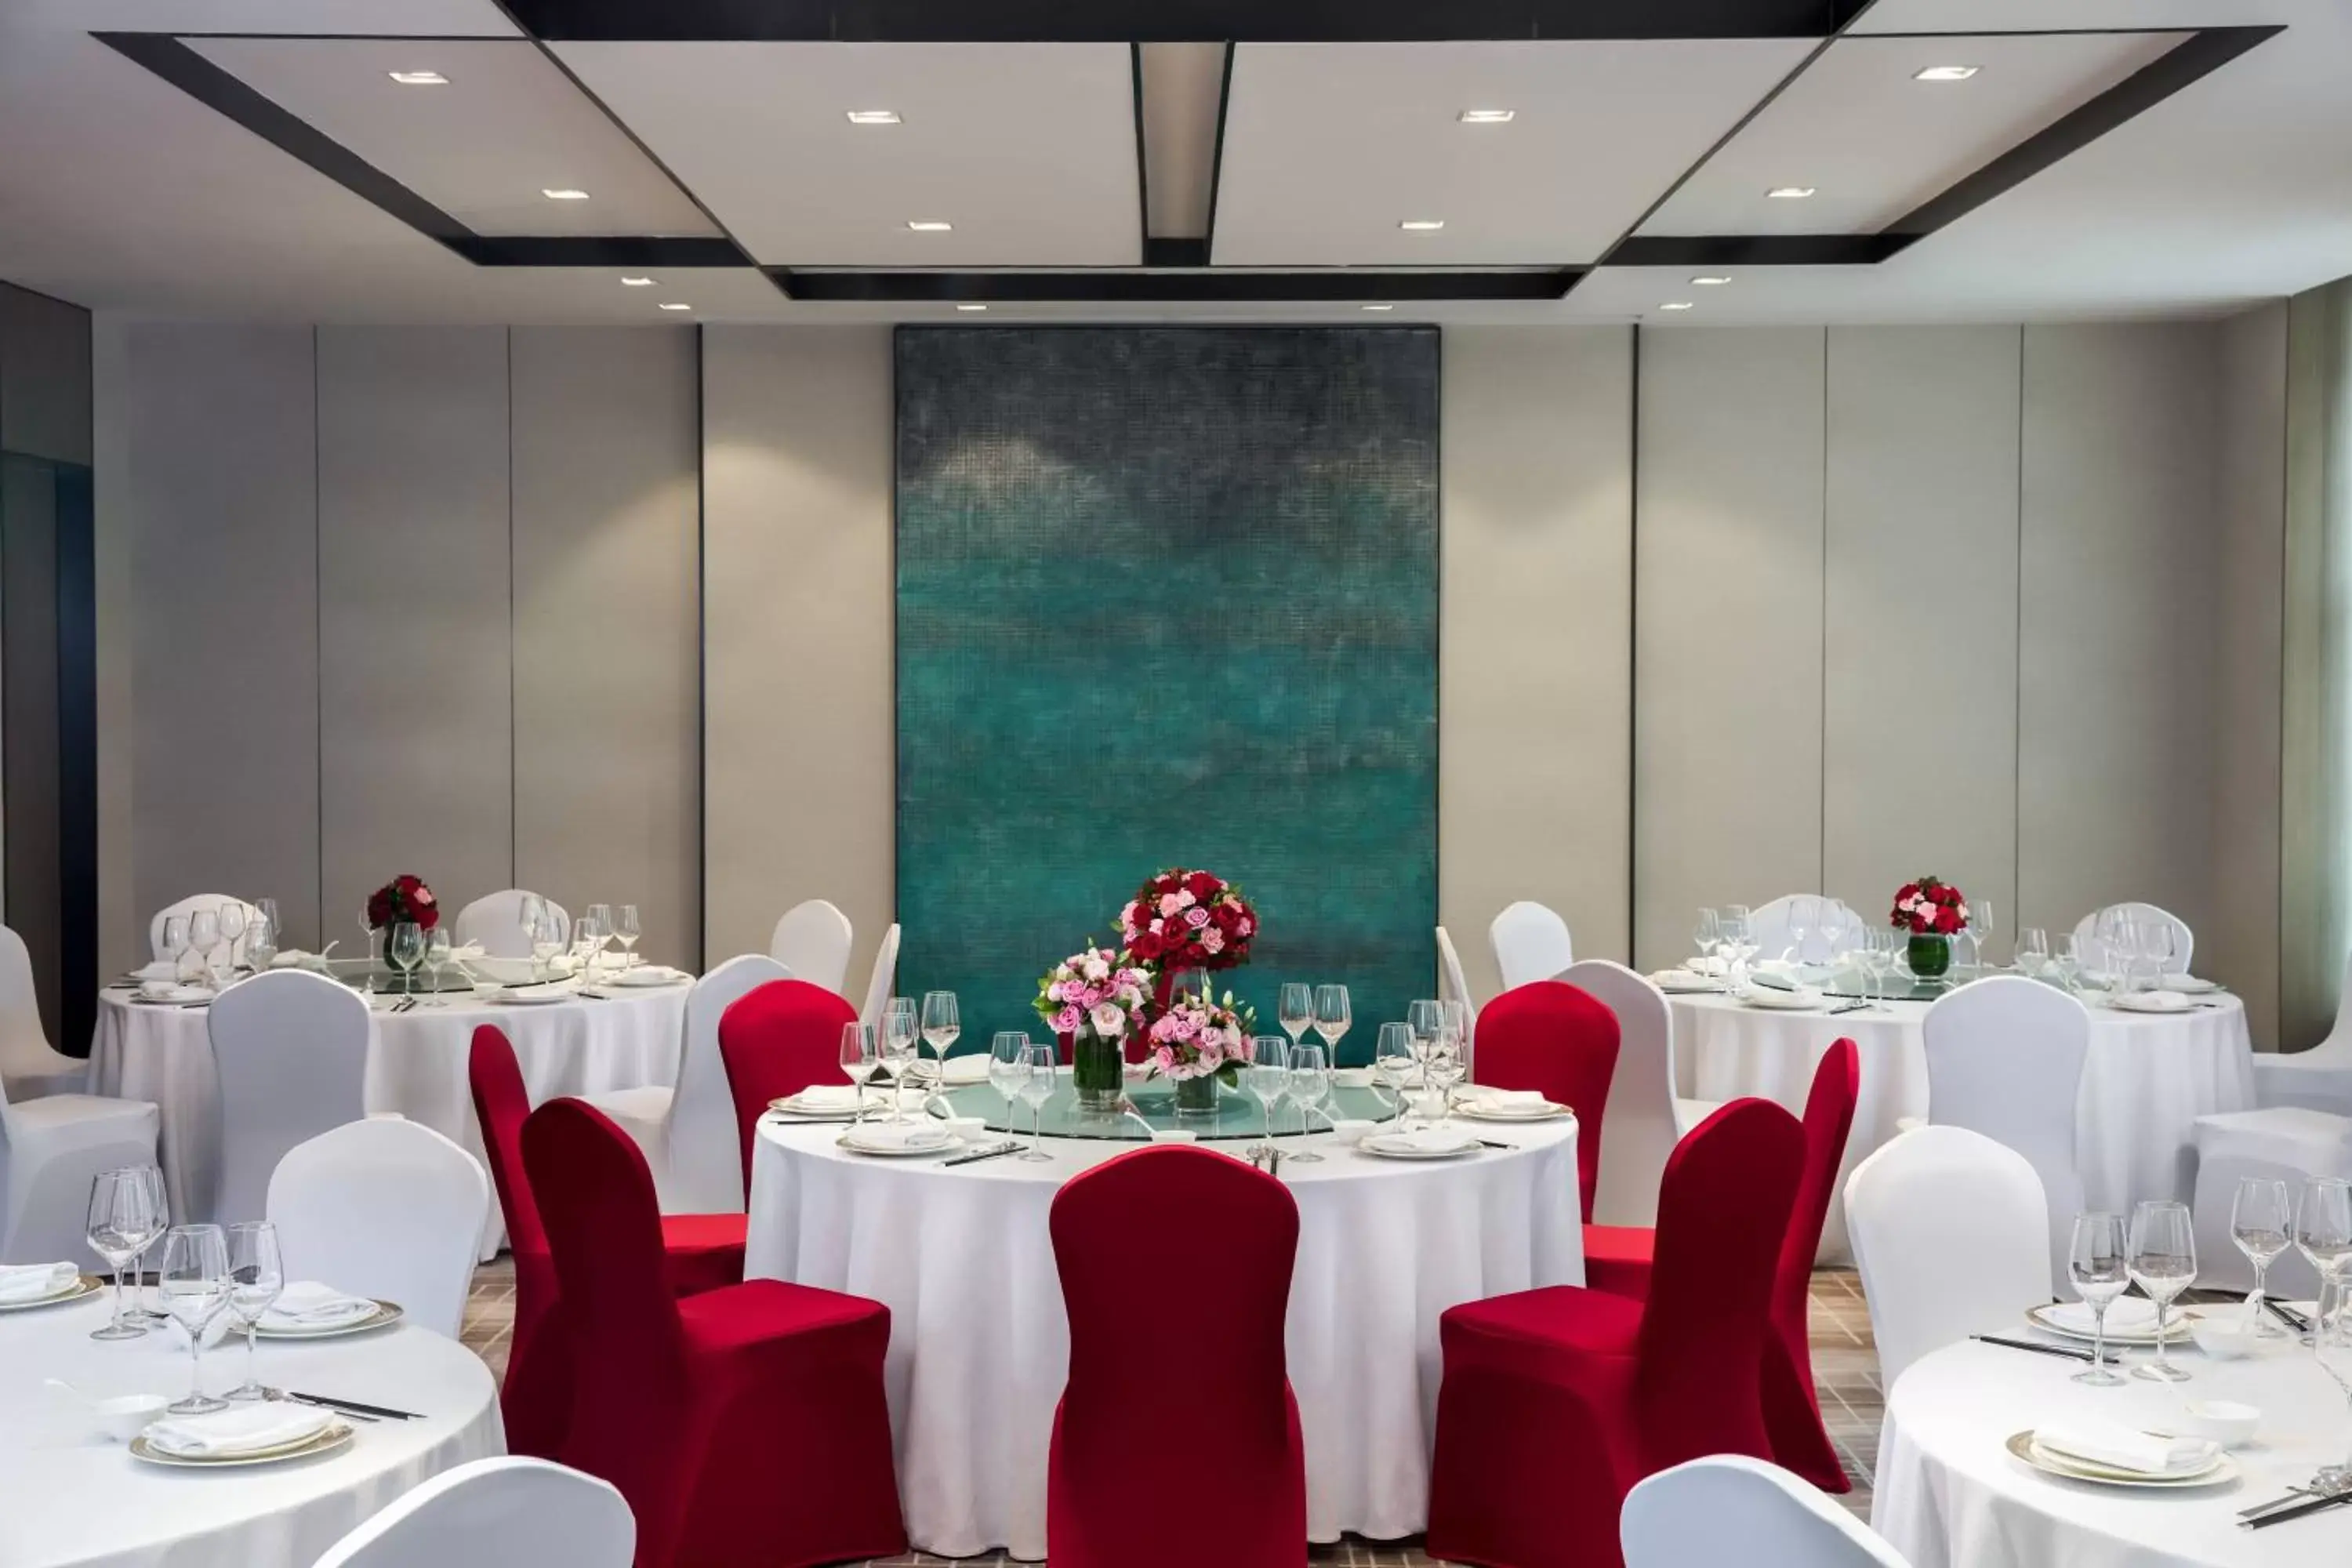 Banquet/Function facilities, Banquet Facilities in Courtyard by Marriott Tianjin Hongqiao